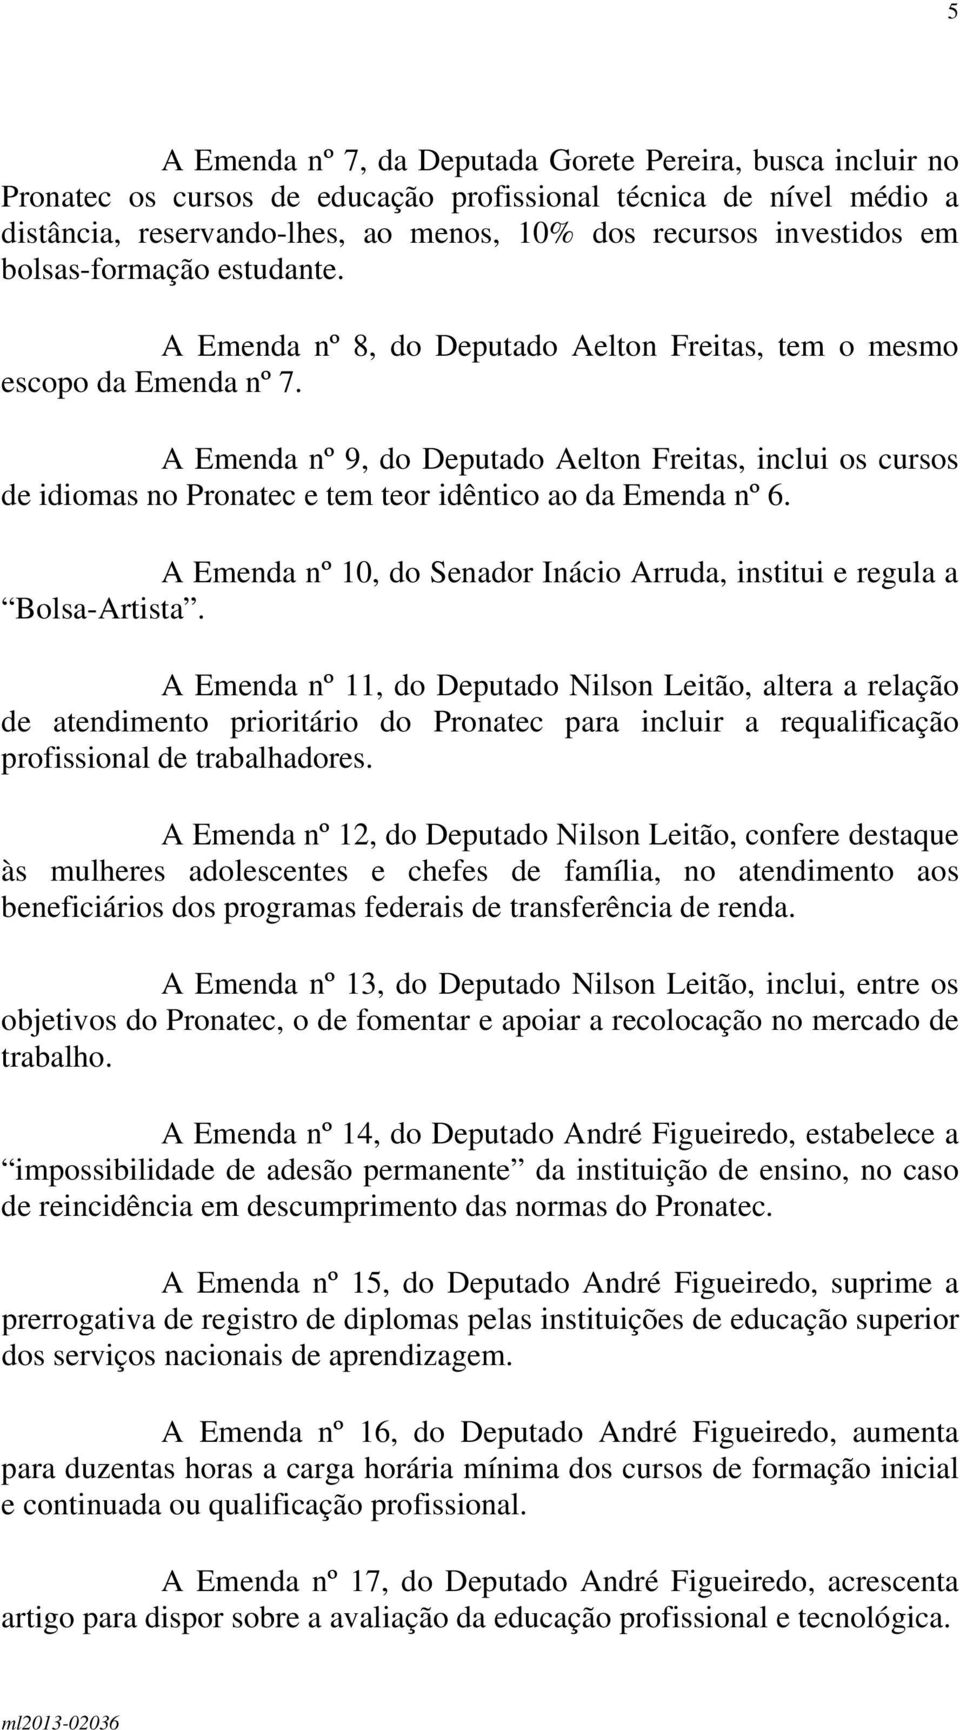 A Emenda nº 9, do Deputado Aelton Freitas, inclui os cursos de idiomas no Pronatec e tem teor idêntico ao da Emenda nº 6. A Emenda nº 10, do Senador Inácio Arruda, institui e regula a Bolsa-Artista.